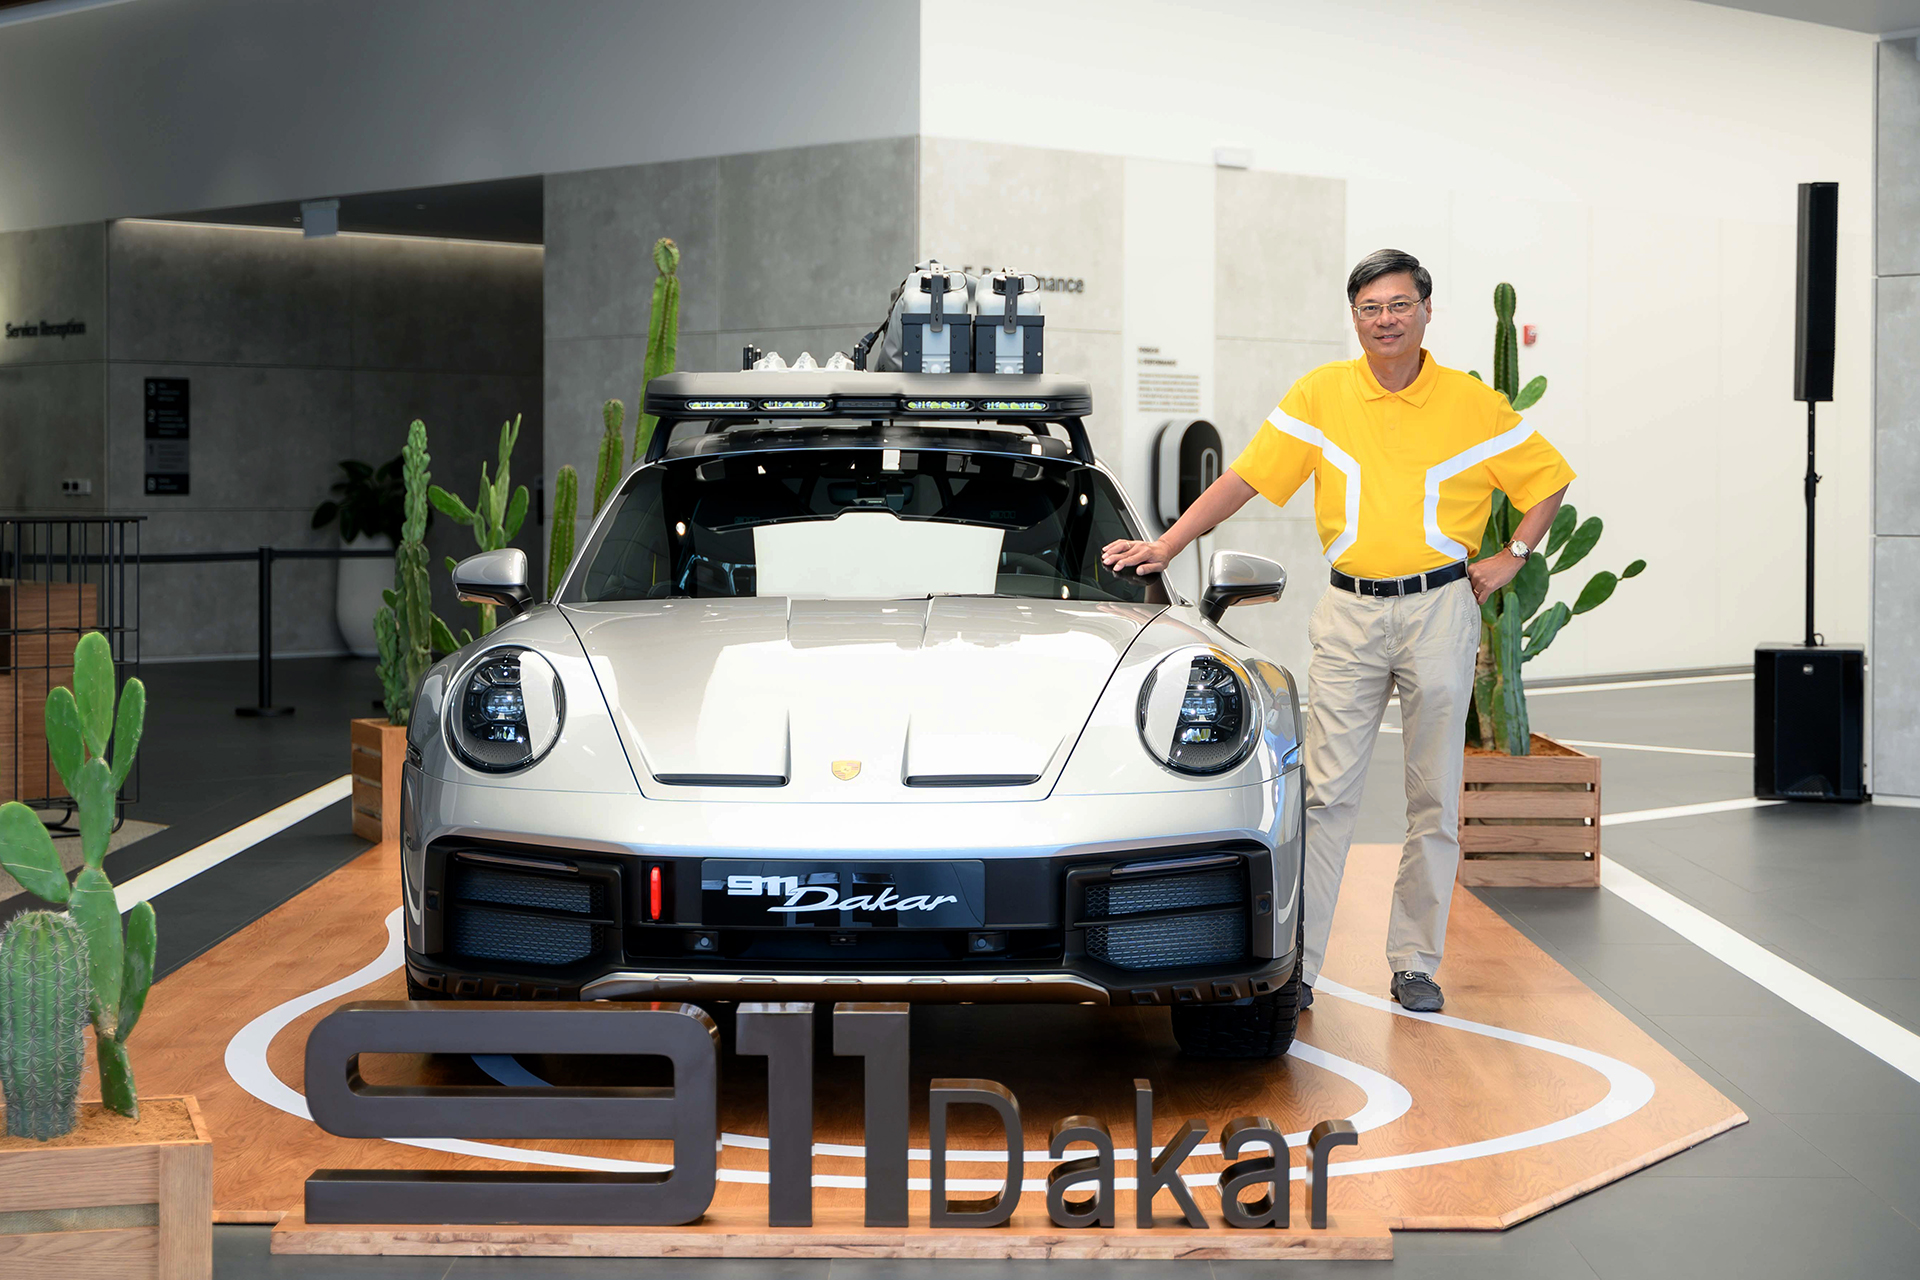 Ông Nguyễn Hoàng Anh, một người chơi xe kín tiếng, đã trở thành chủ sở hữu chiếc siêu xe off-road Porsche 911 Dakar đầu tiên tại Việt Nam.